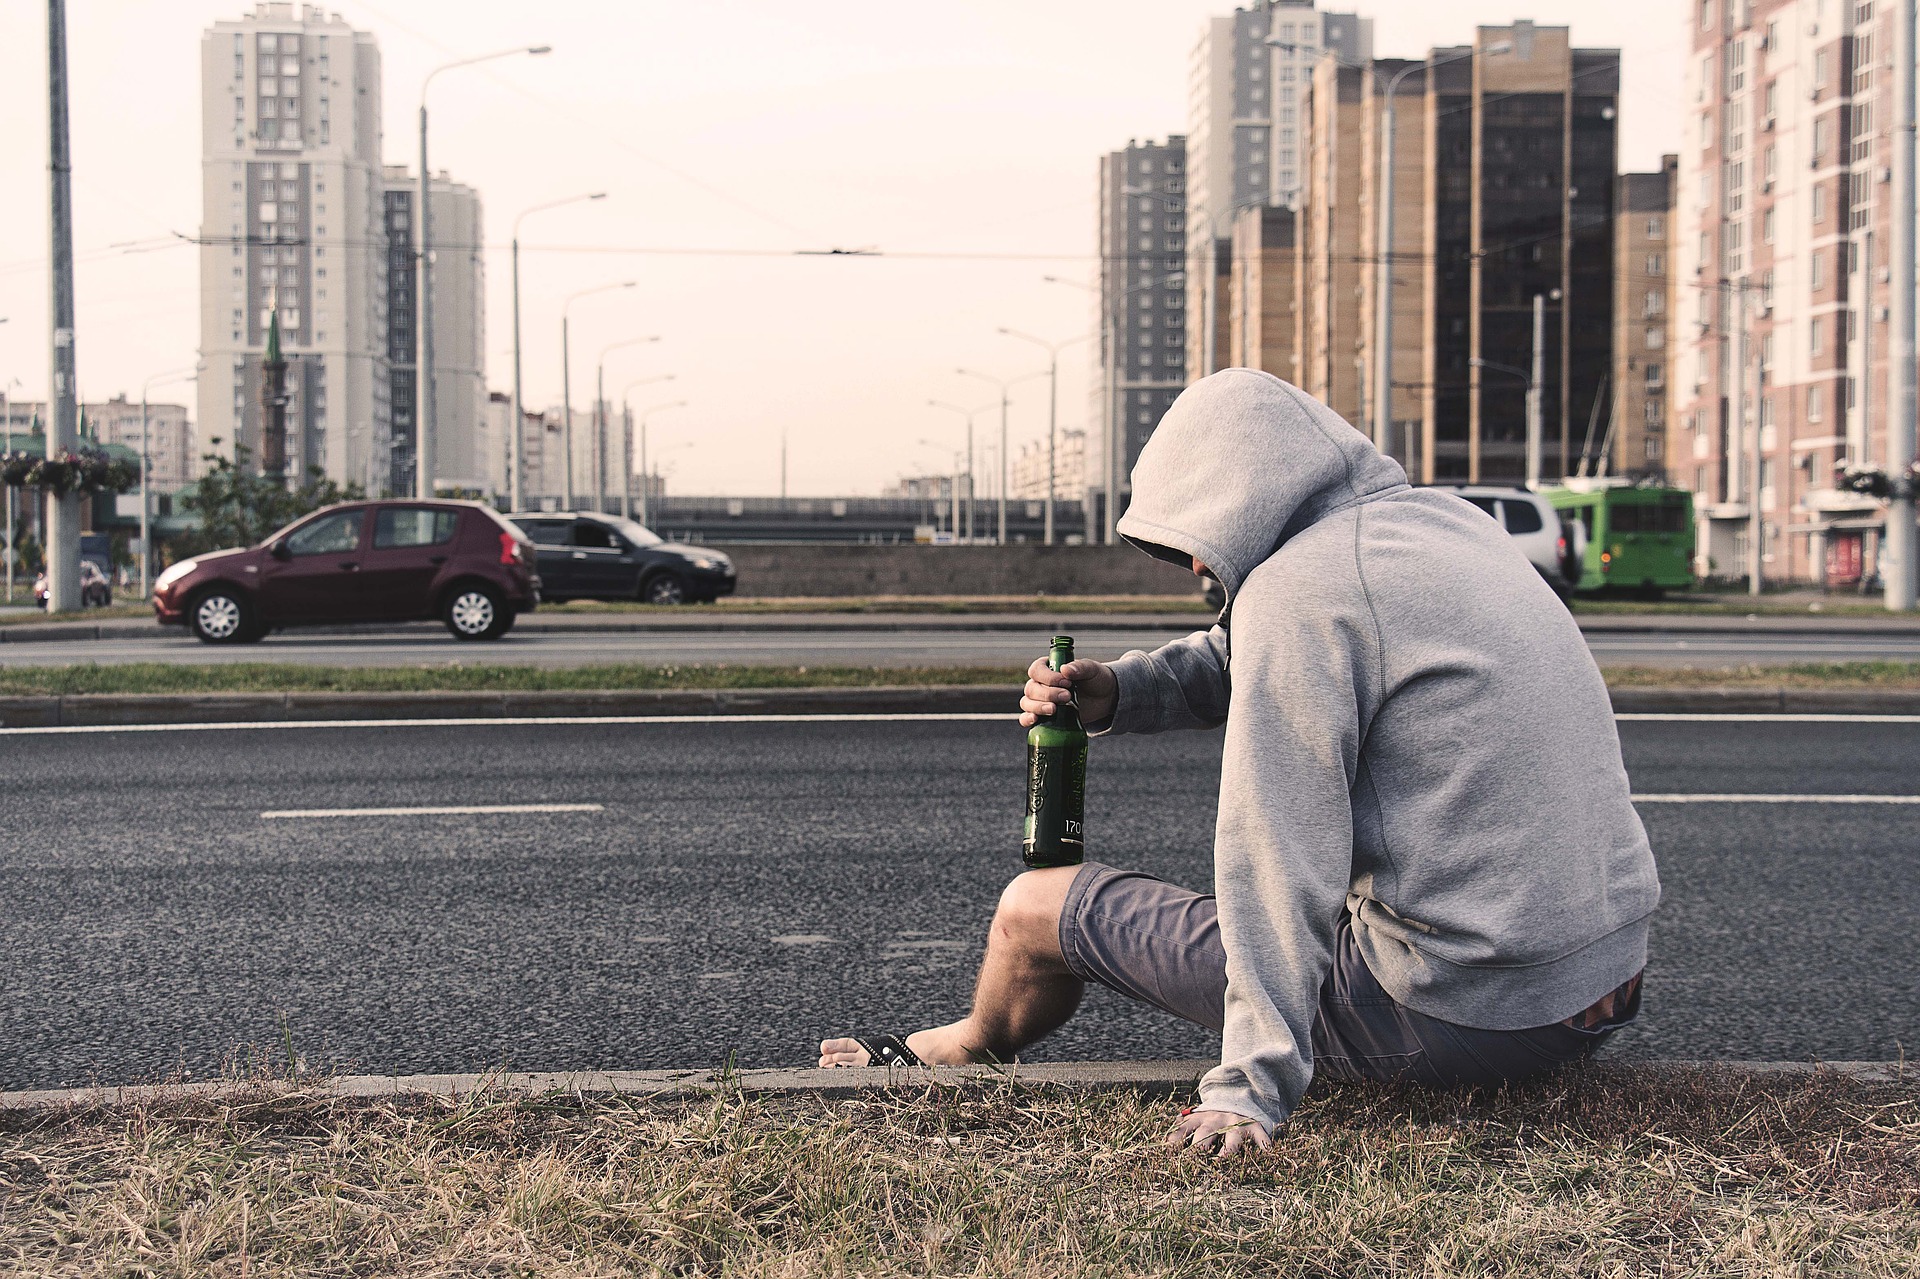 291.000 άνθρωποι τον χρόνο χάνουν τη ζωή τους λόγω αλκοόλ!